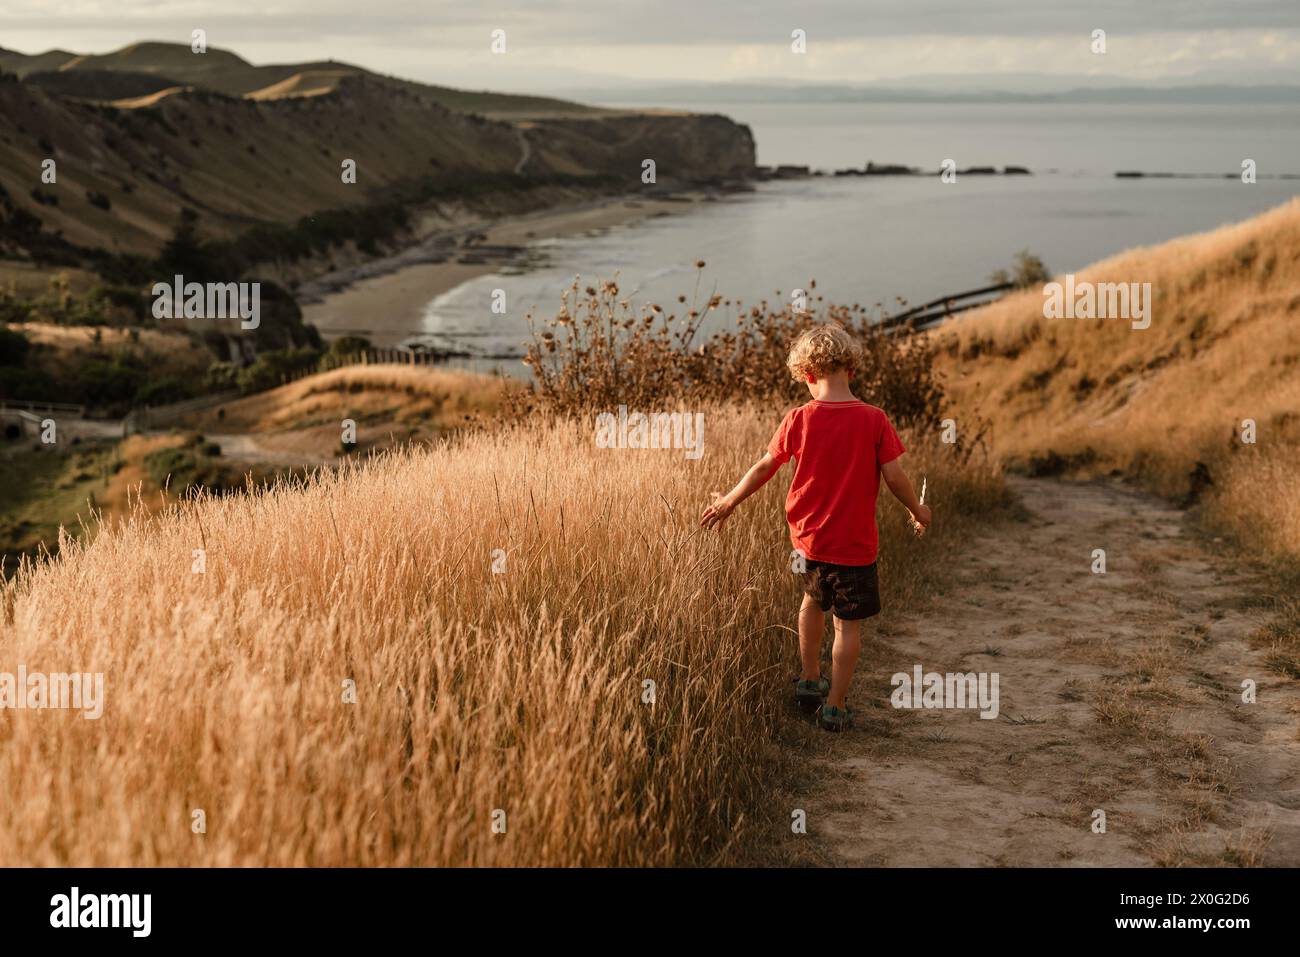 Jeune garçon marchant sur le chemin avec de l'herbe dorée au-dessus de la côte Banque D'Images